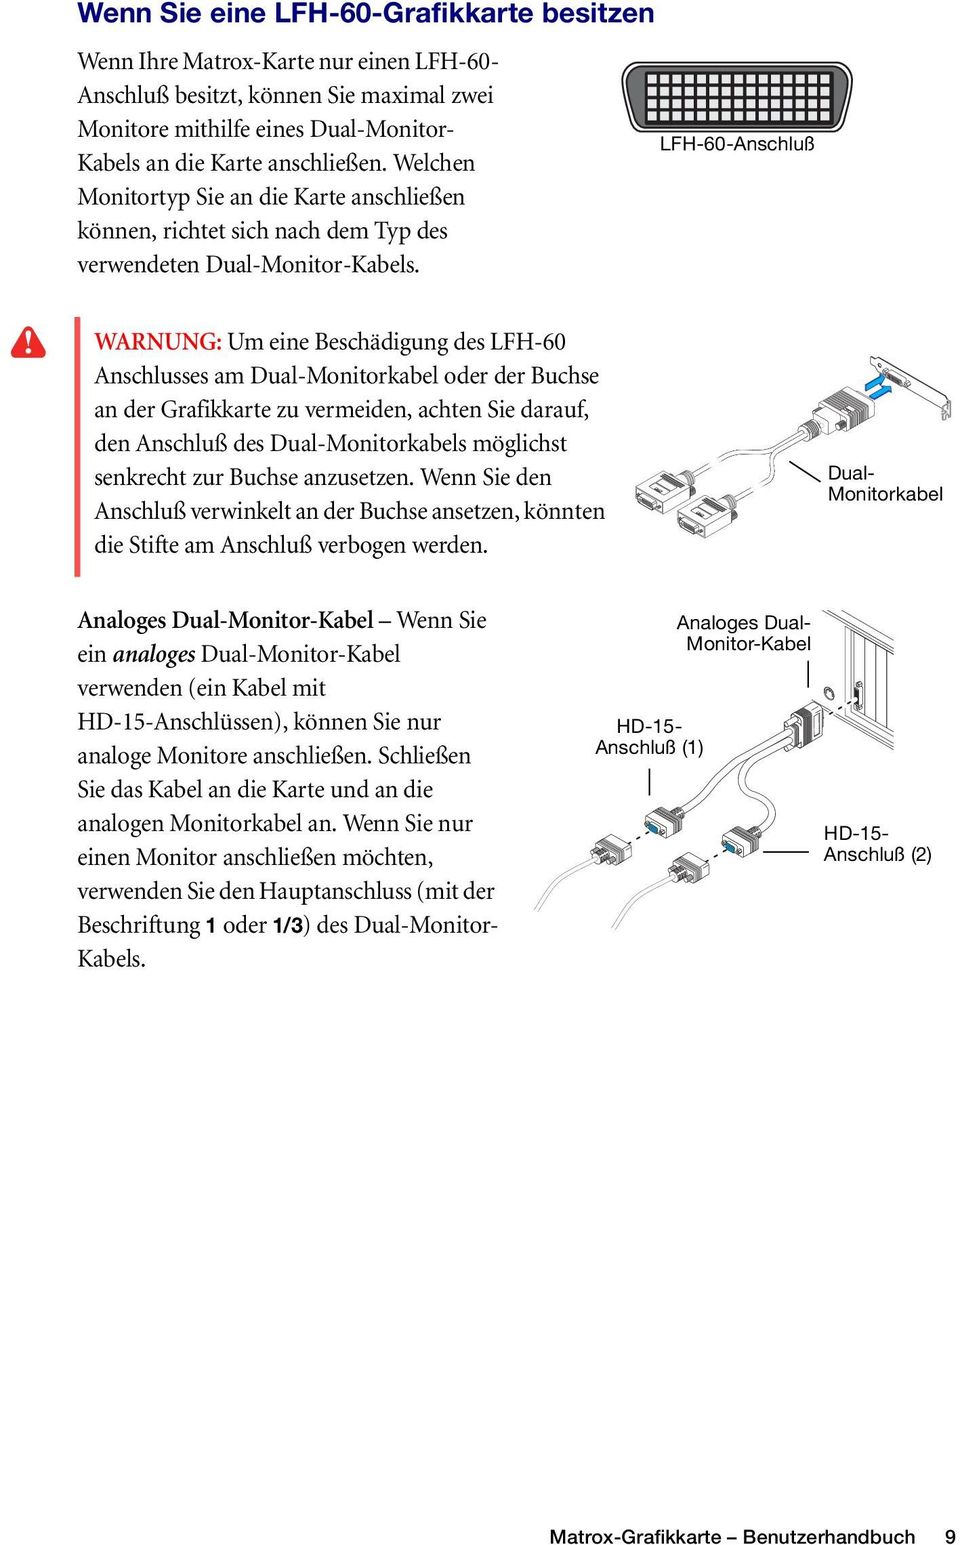 LFH-60-Anschluß WARNUNG: Um eine Beschädigung des LFH-60 Anschlusses am Dual-Monitorkabel oder der Buchse an der Grafikkarte zu vermeiden, achten Sie darauf, den Anschluß des Dual-Monitorkabels